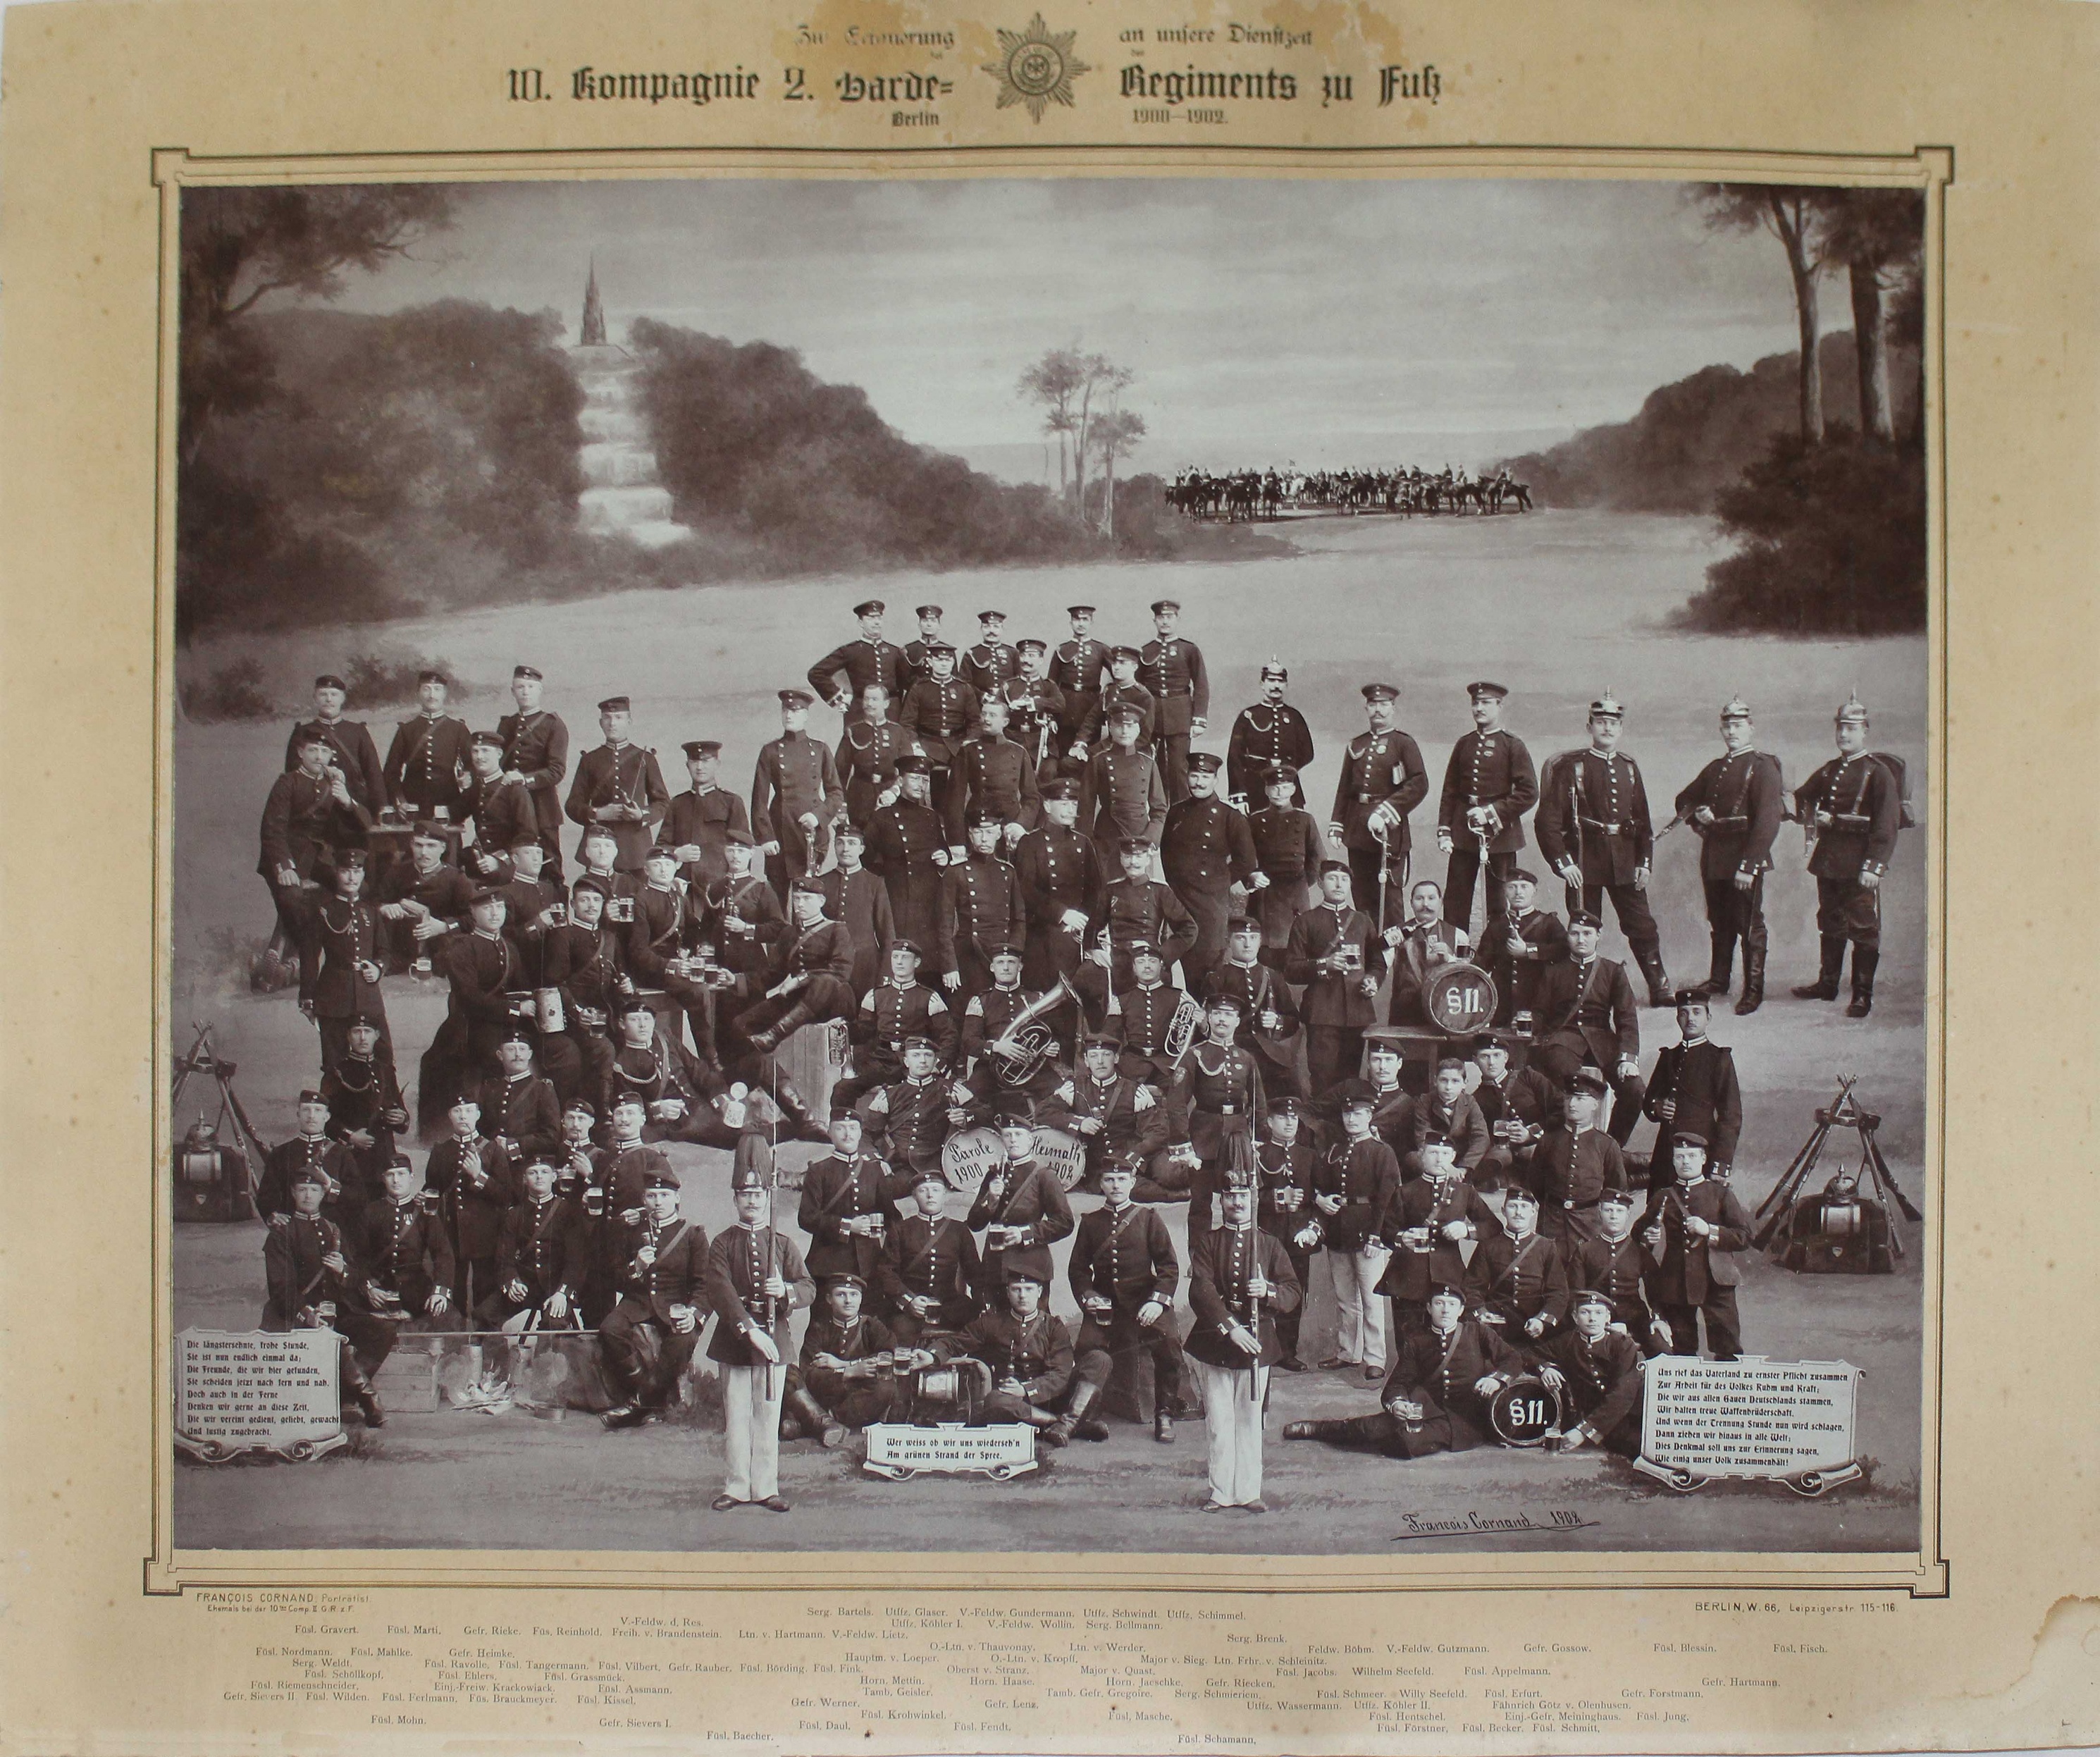 Fotografie, 10. Kompagnie 2. Garde-Regiment zu Fuß, 1900-1902 (Museum Wolmirstedt RR-F)